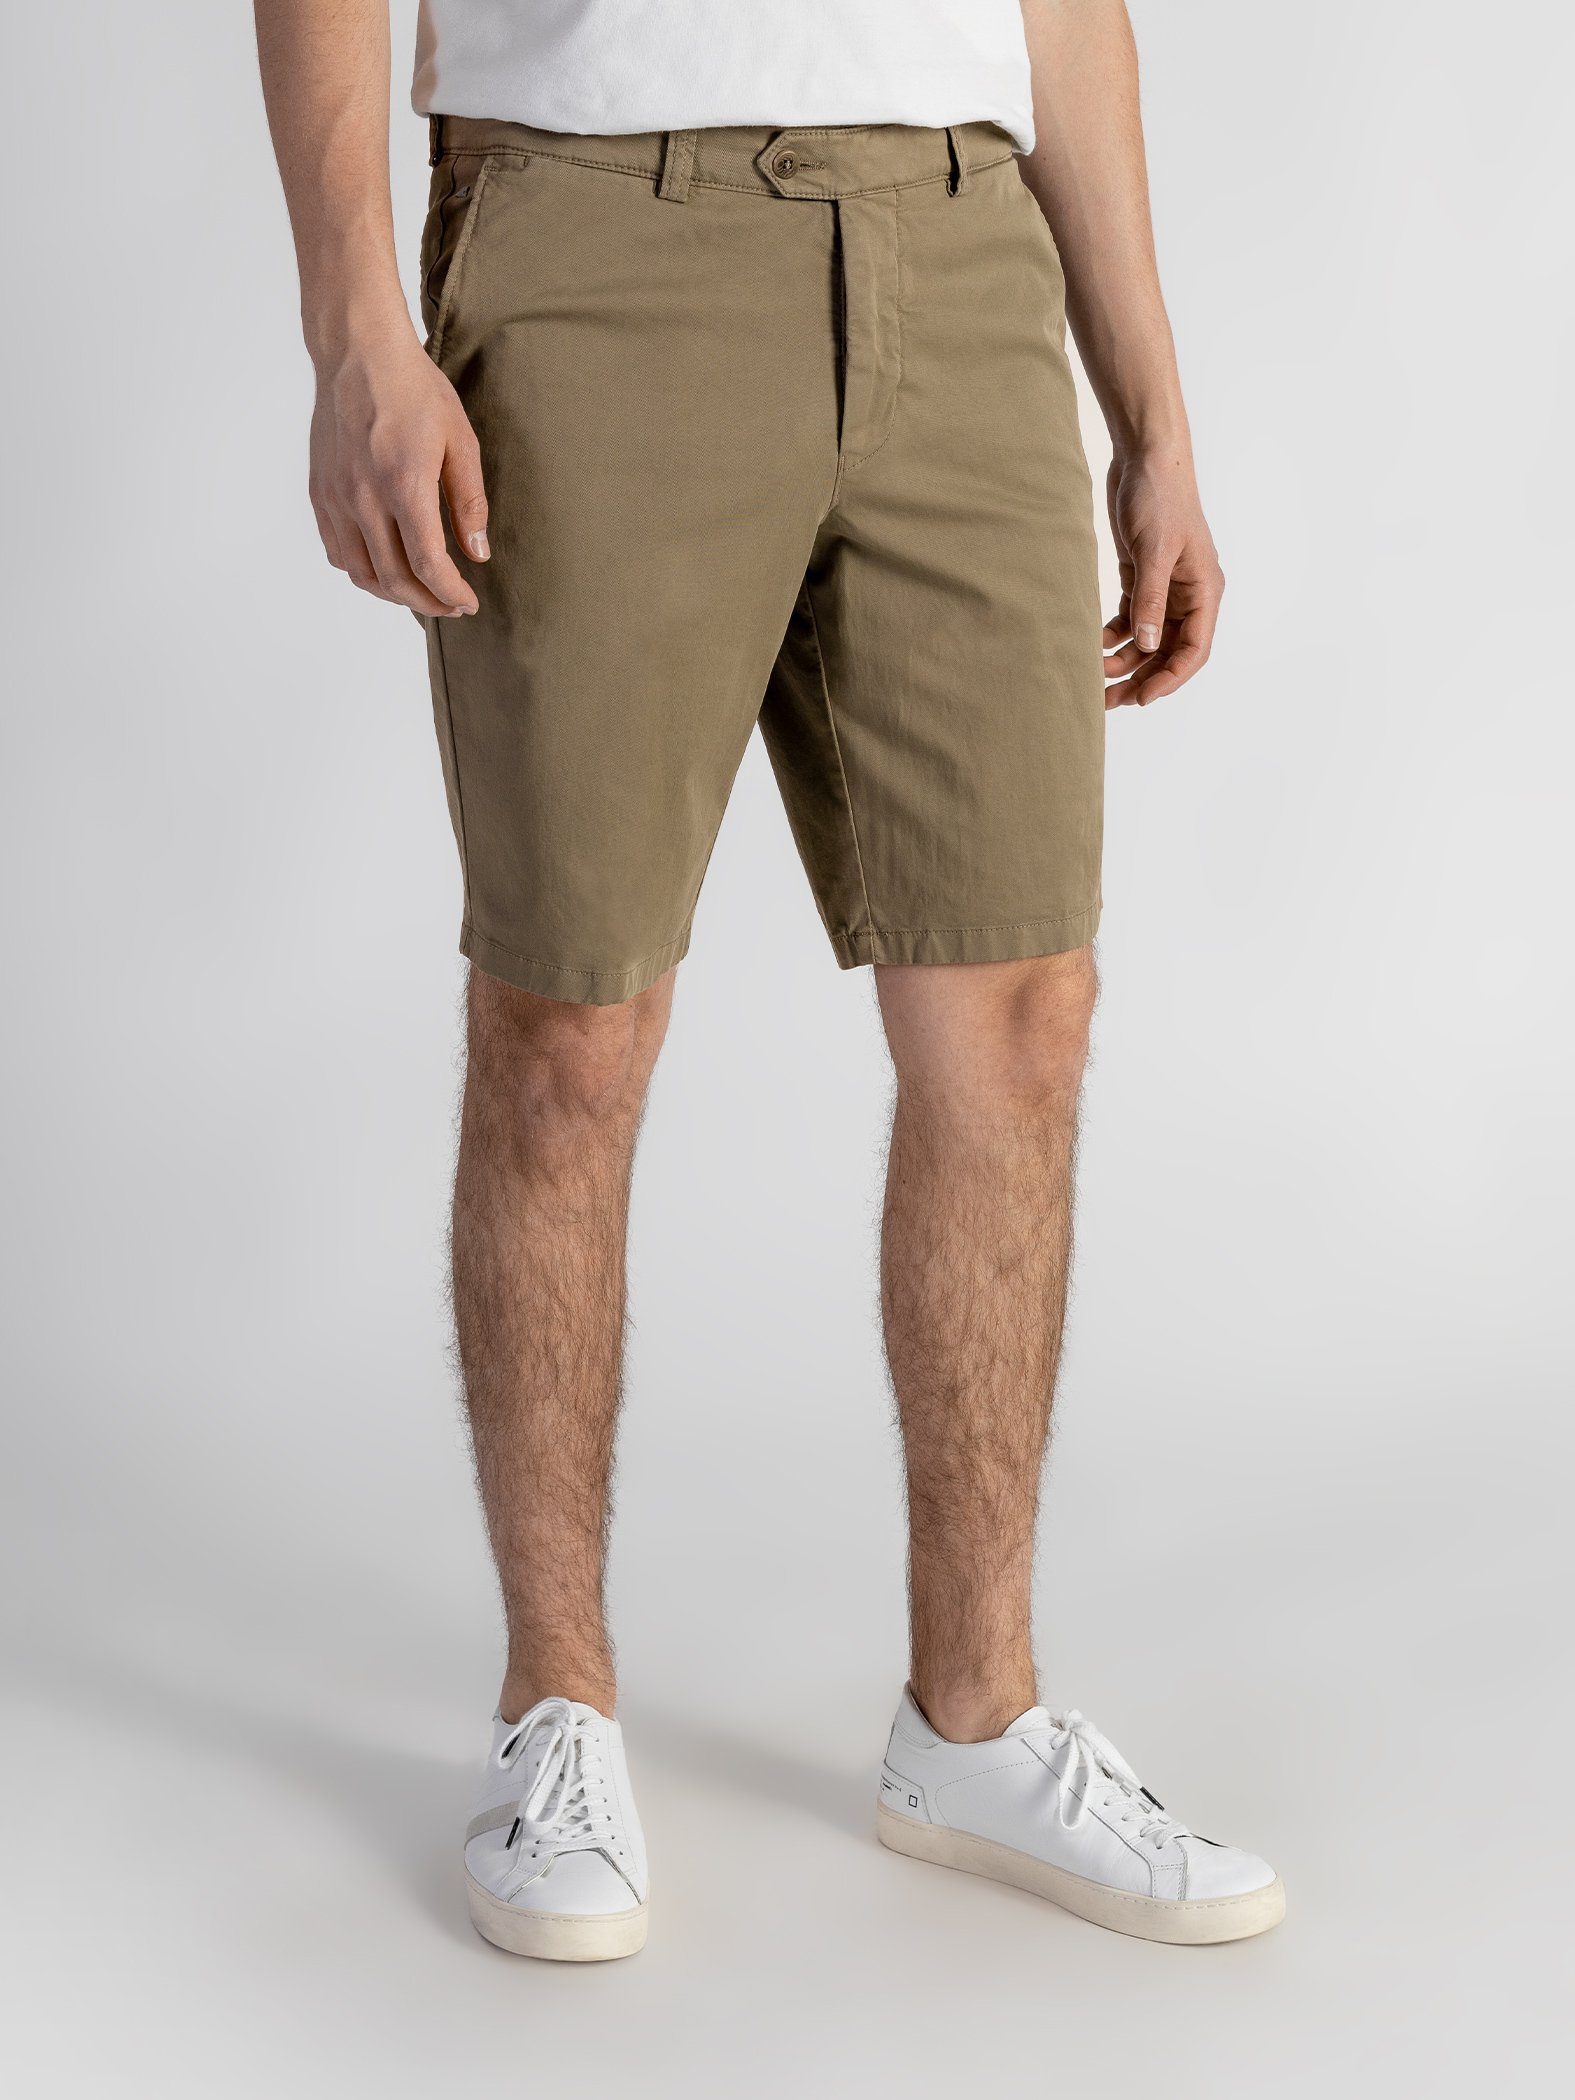 TwoMates Shorts Shorts mit elastischem Beige GOTS-zertifiziert Bund, Farbauswahl